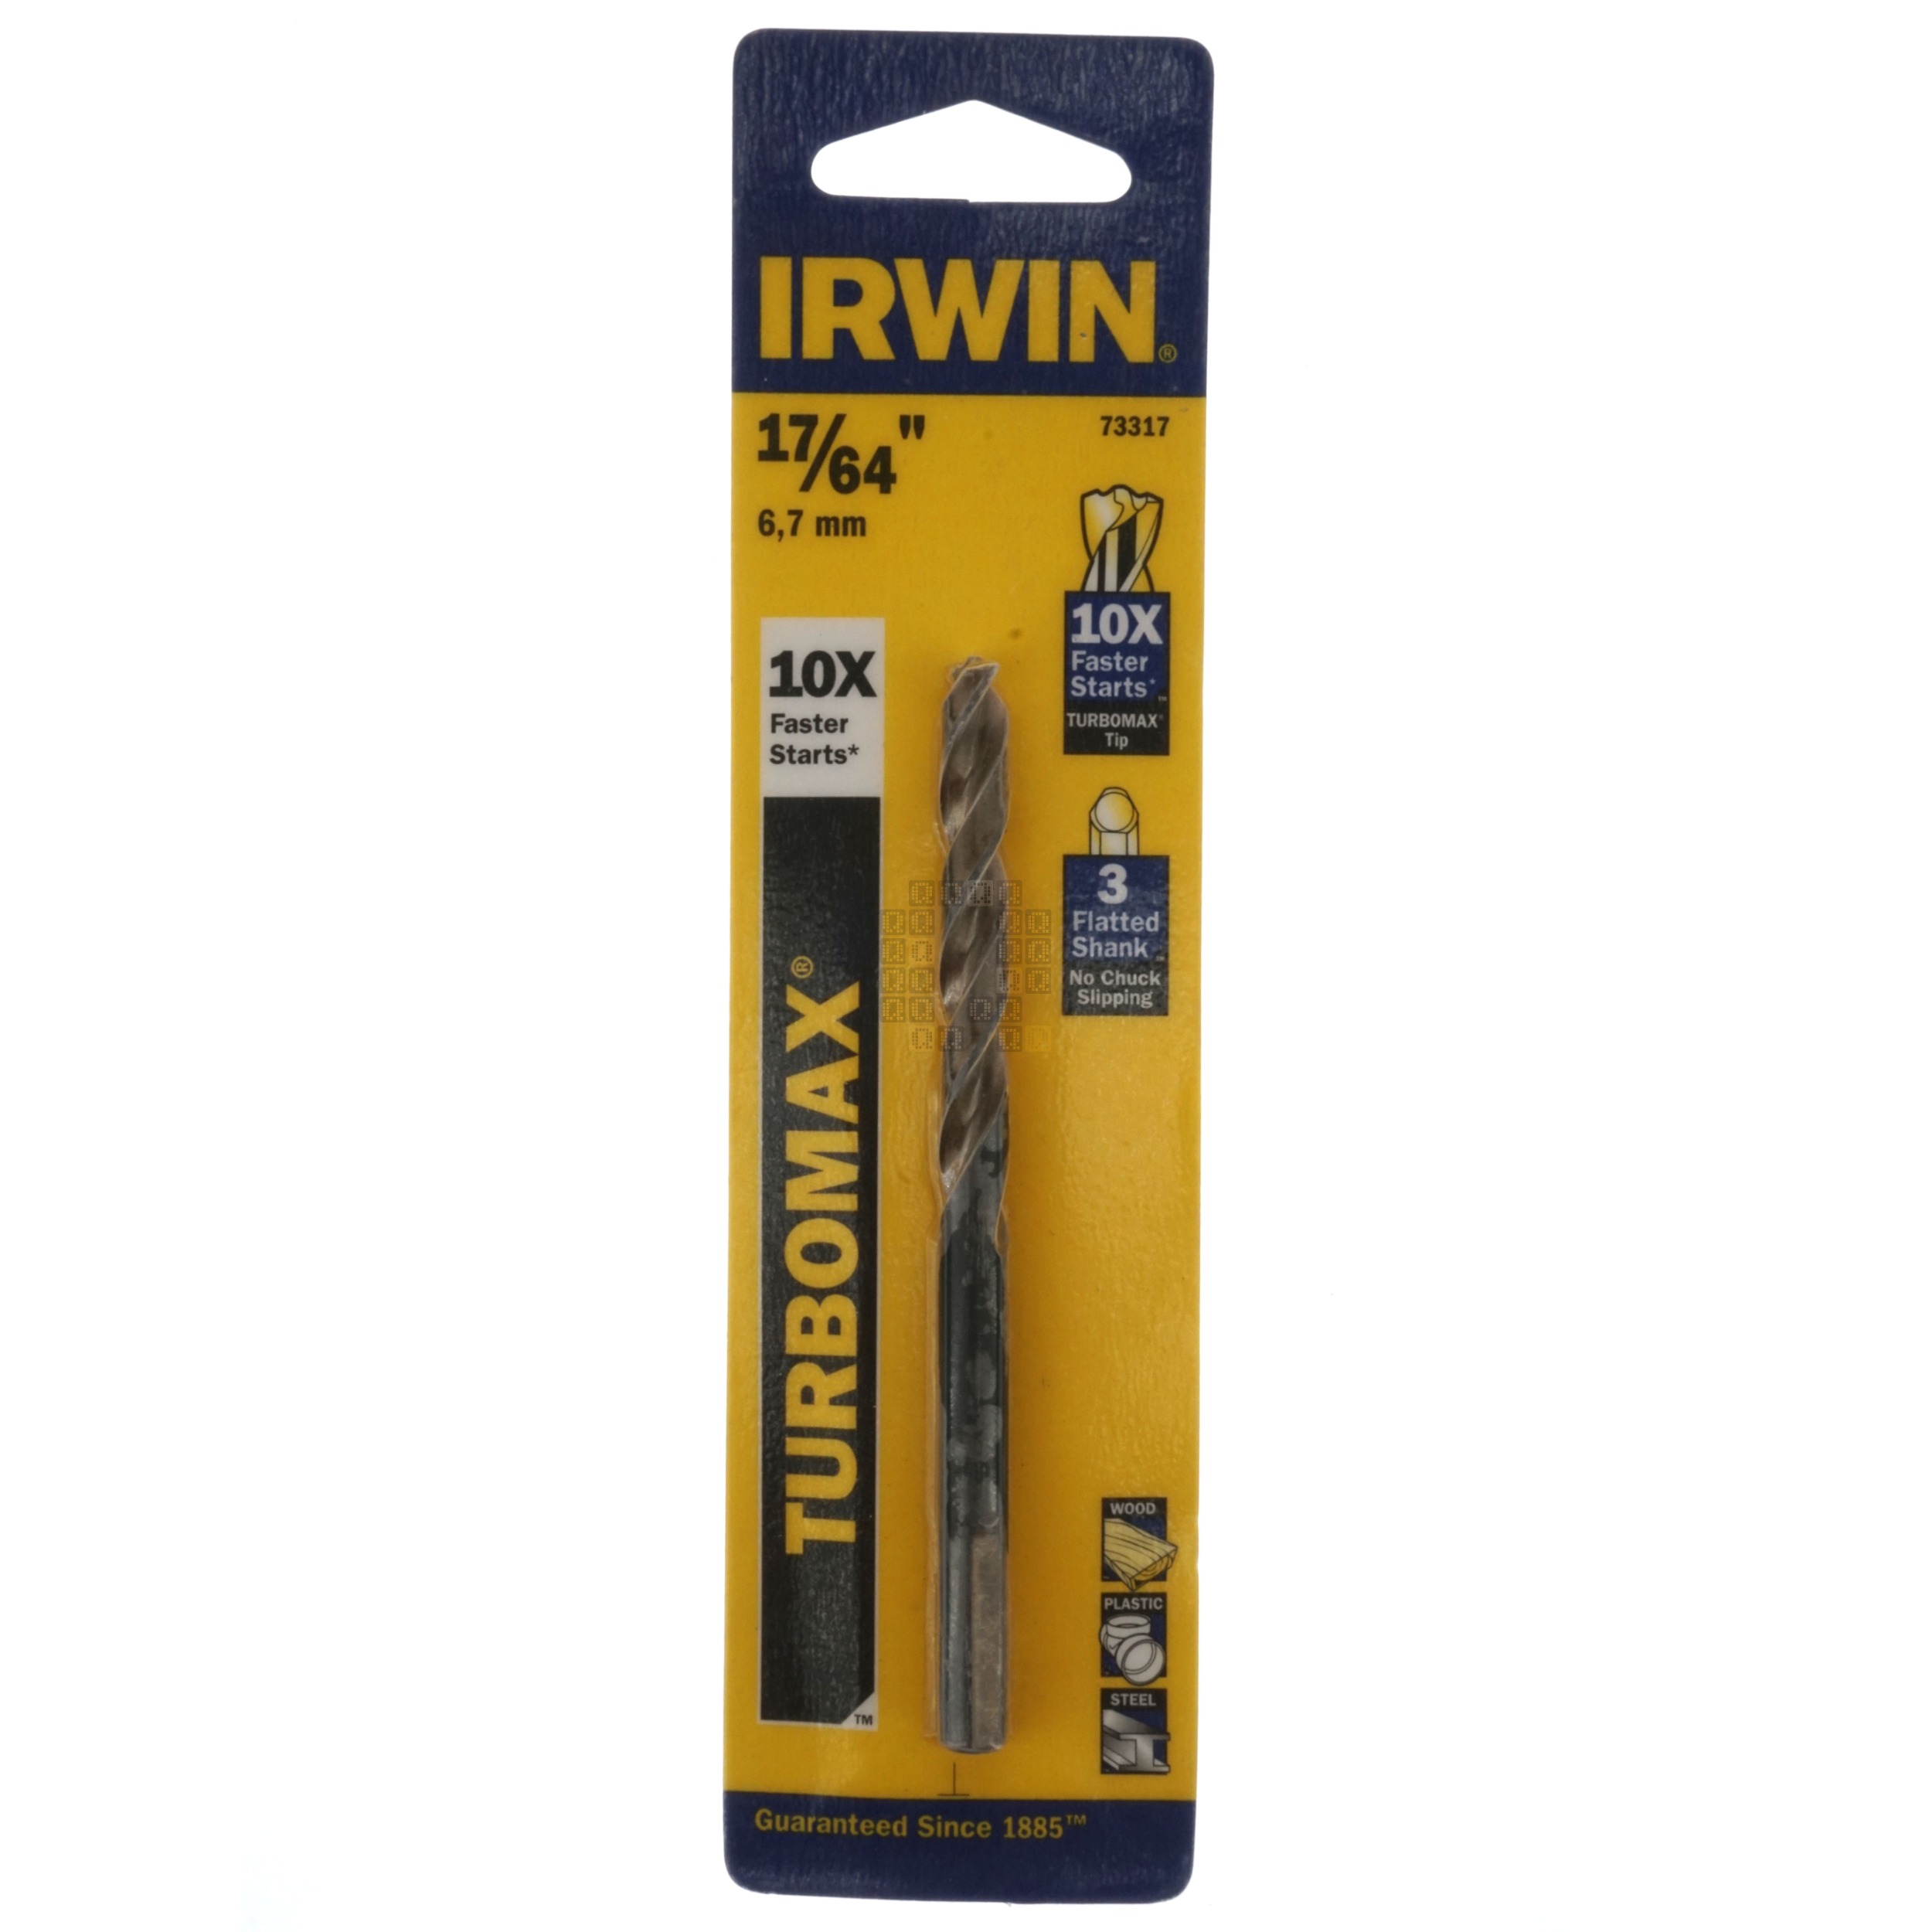 Irwin Industrial Tools 73317 Turbomax 17/64" Drill Bit